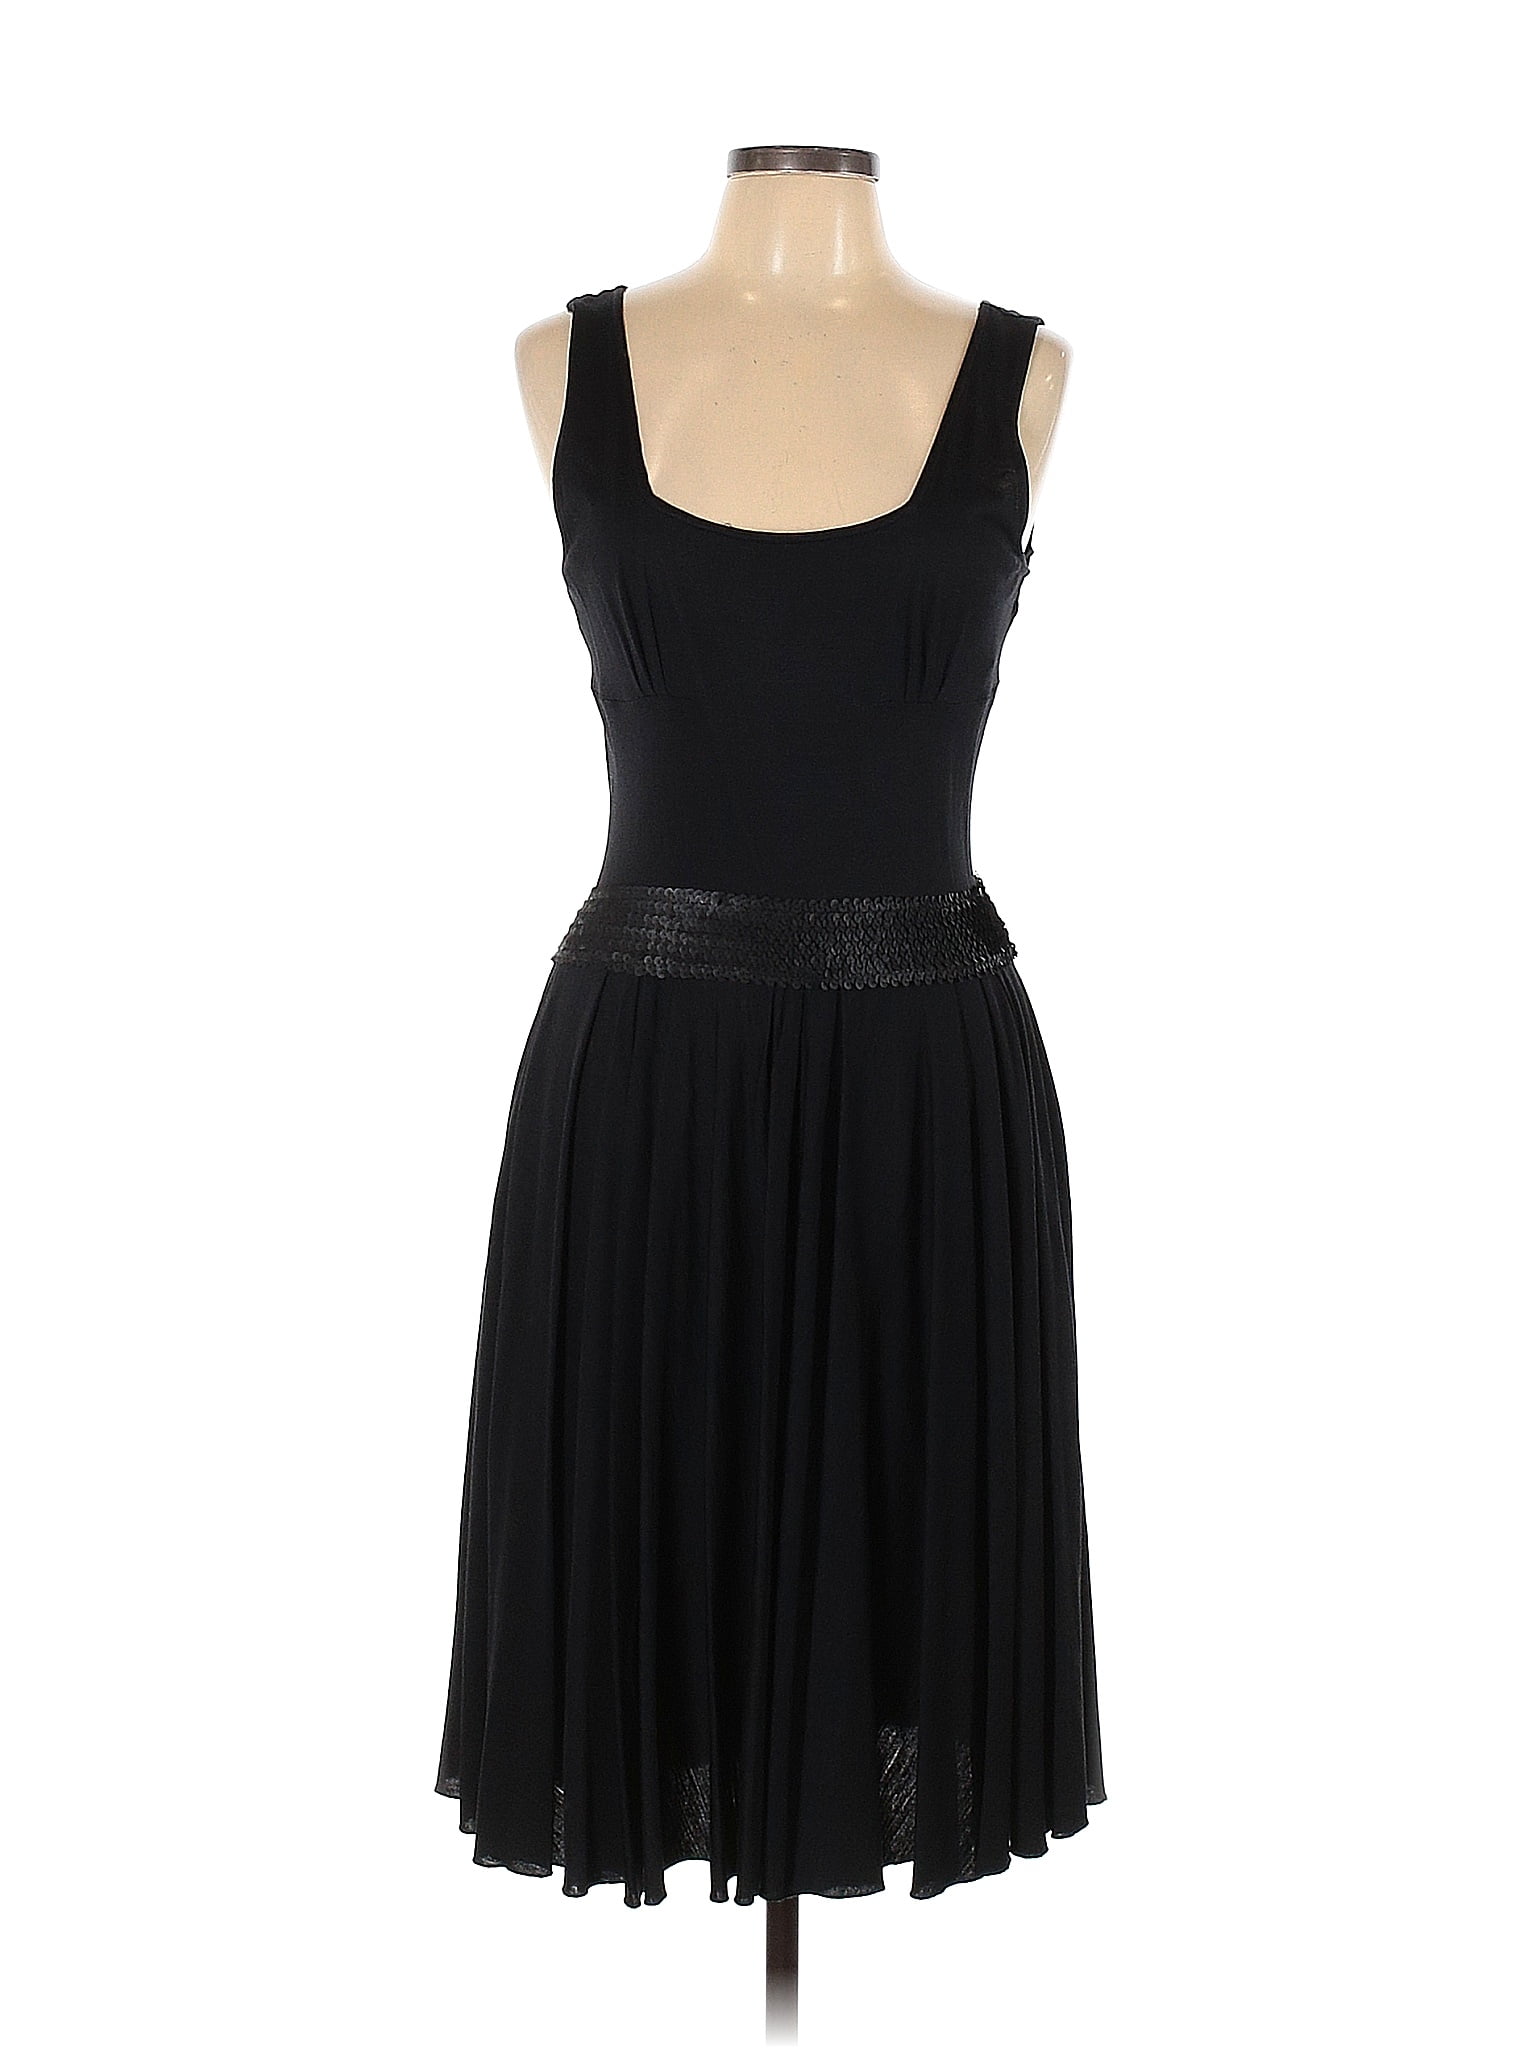 Diane von Furstenberg Black Casual Dress Size 10 - 79% off | thredUP